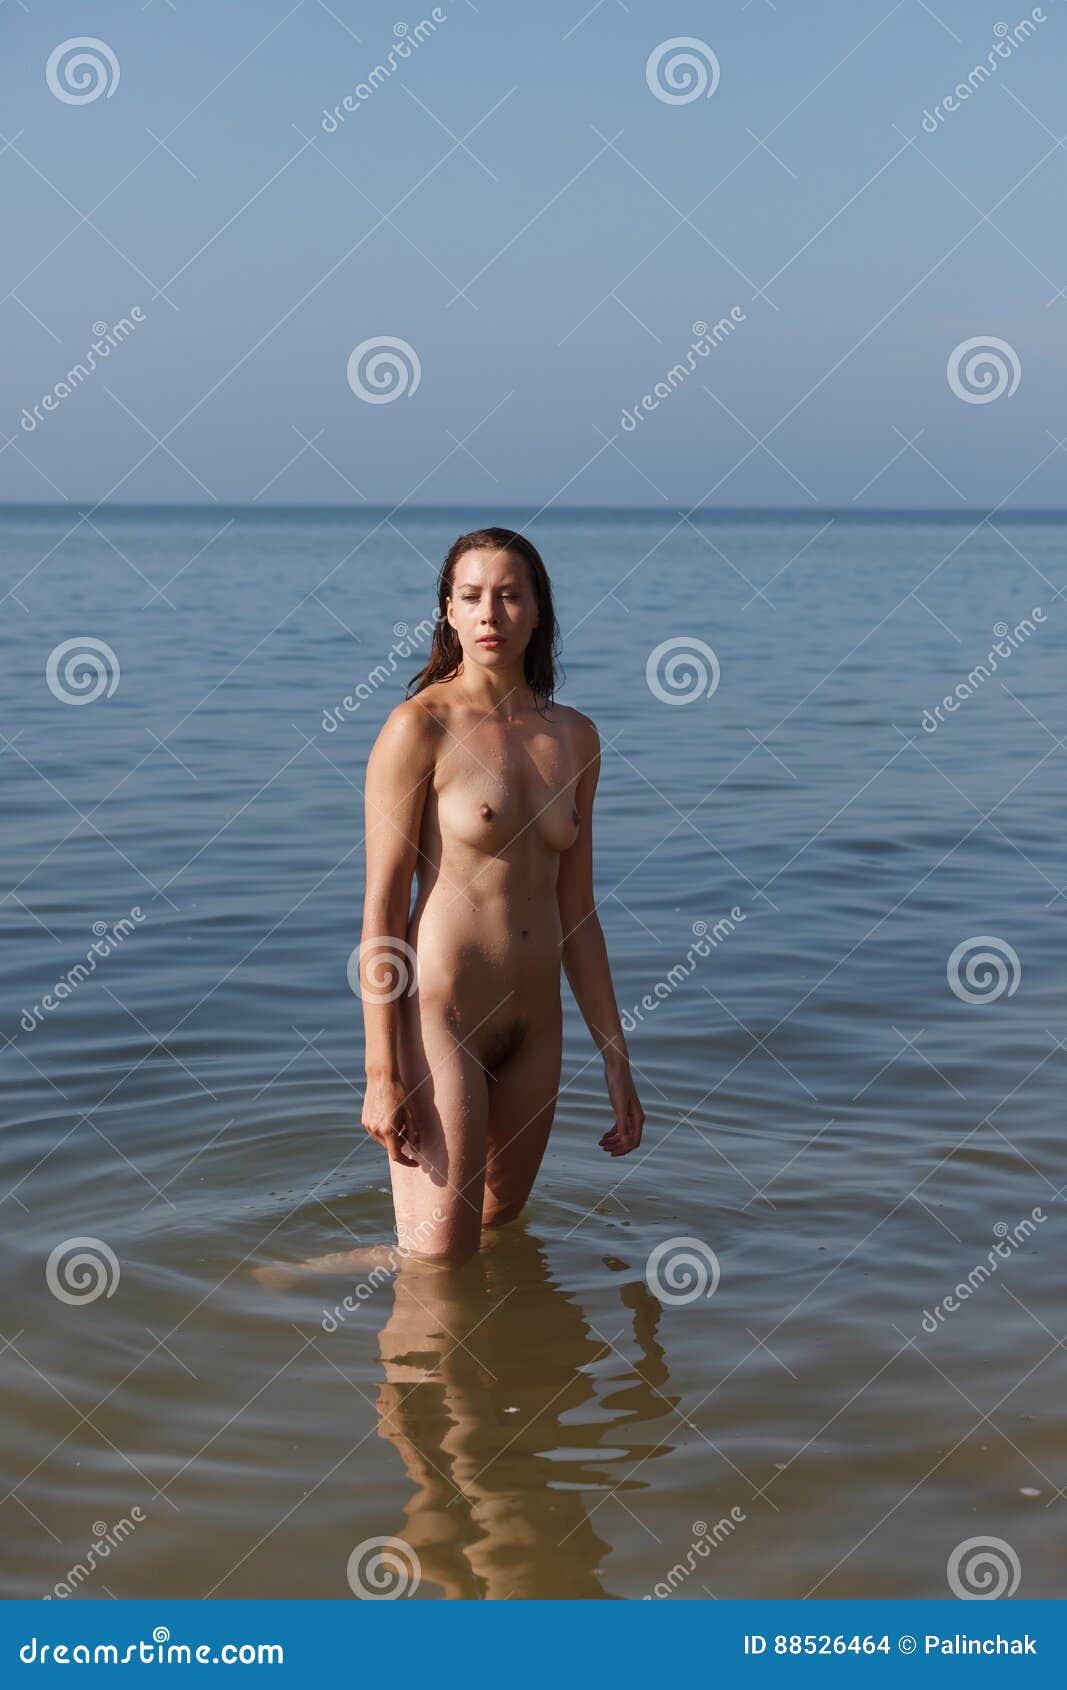 banglae girls naked photo